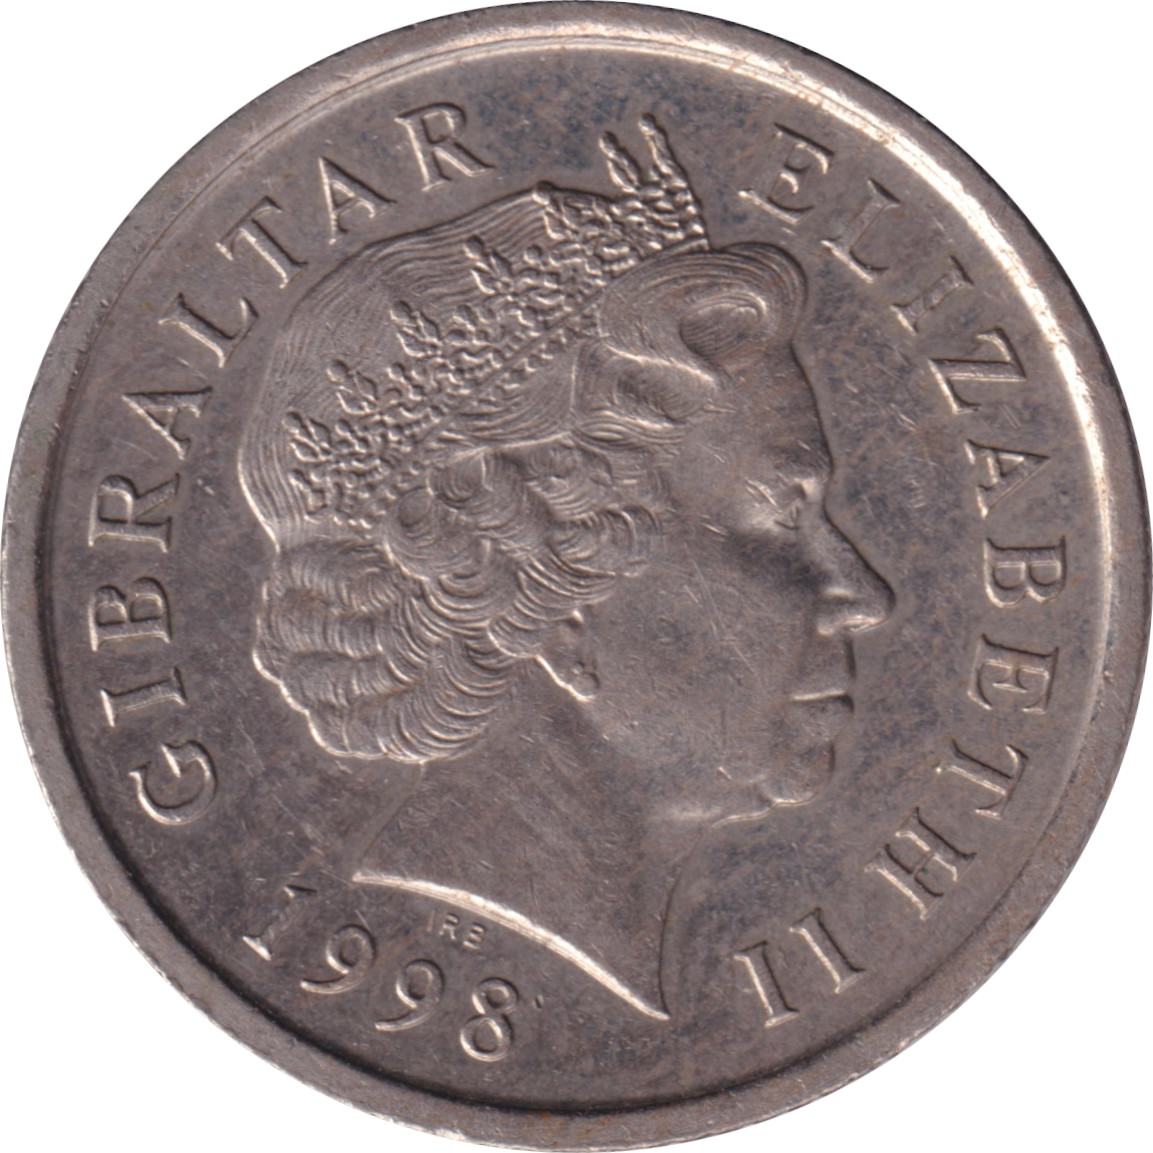 10 pence - Elizabeth II - Tête agée